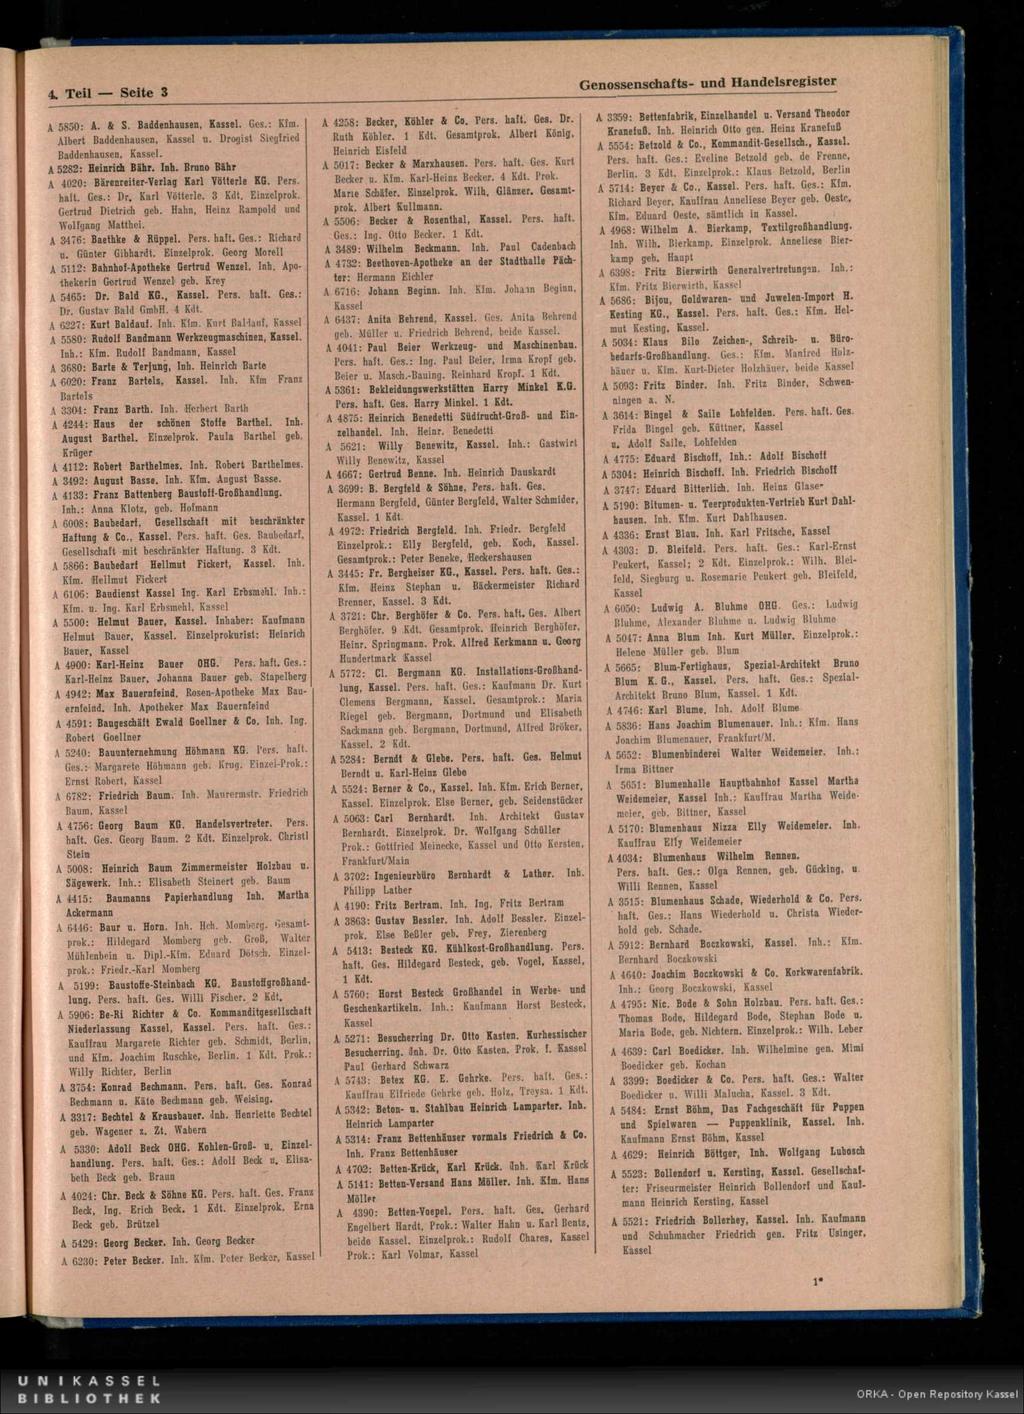 4. Teil Seite 3 Genossenschafts- und Handelsregister A 5850: A. 4 S. Baddenhausen,. Ges.: Kfm. Albert Baddenhausen, u. Drogist Siegfried Baddenhausen,. A 5282: Heinrich Bähr. Inh.